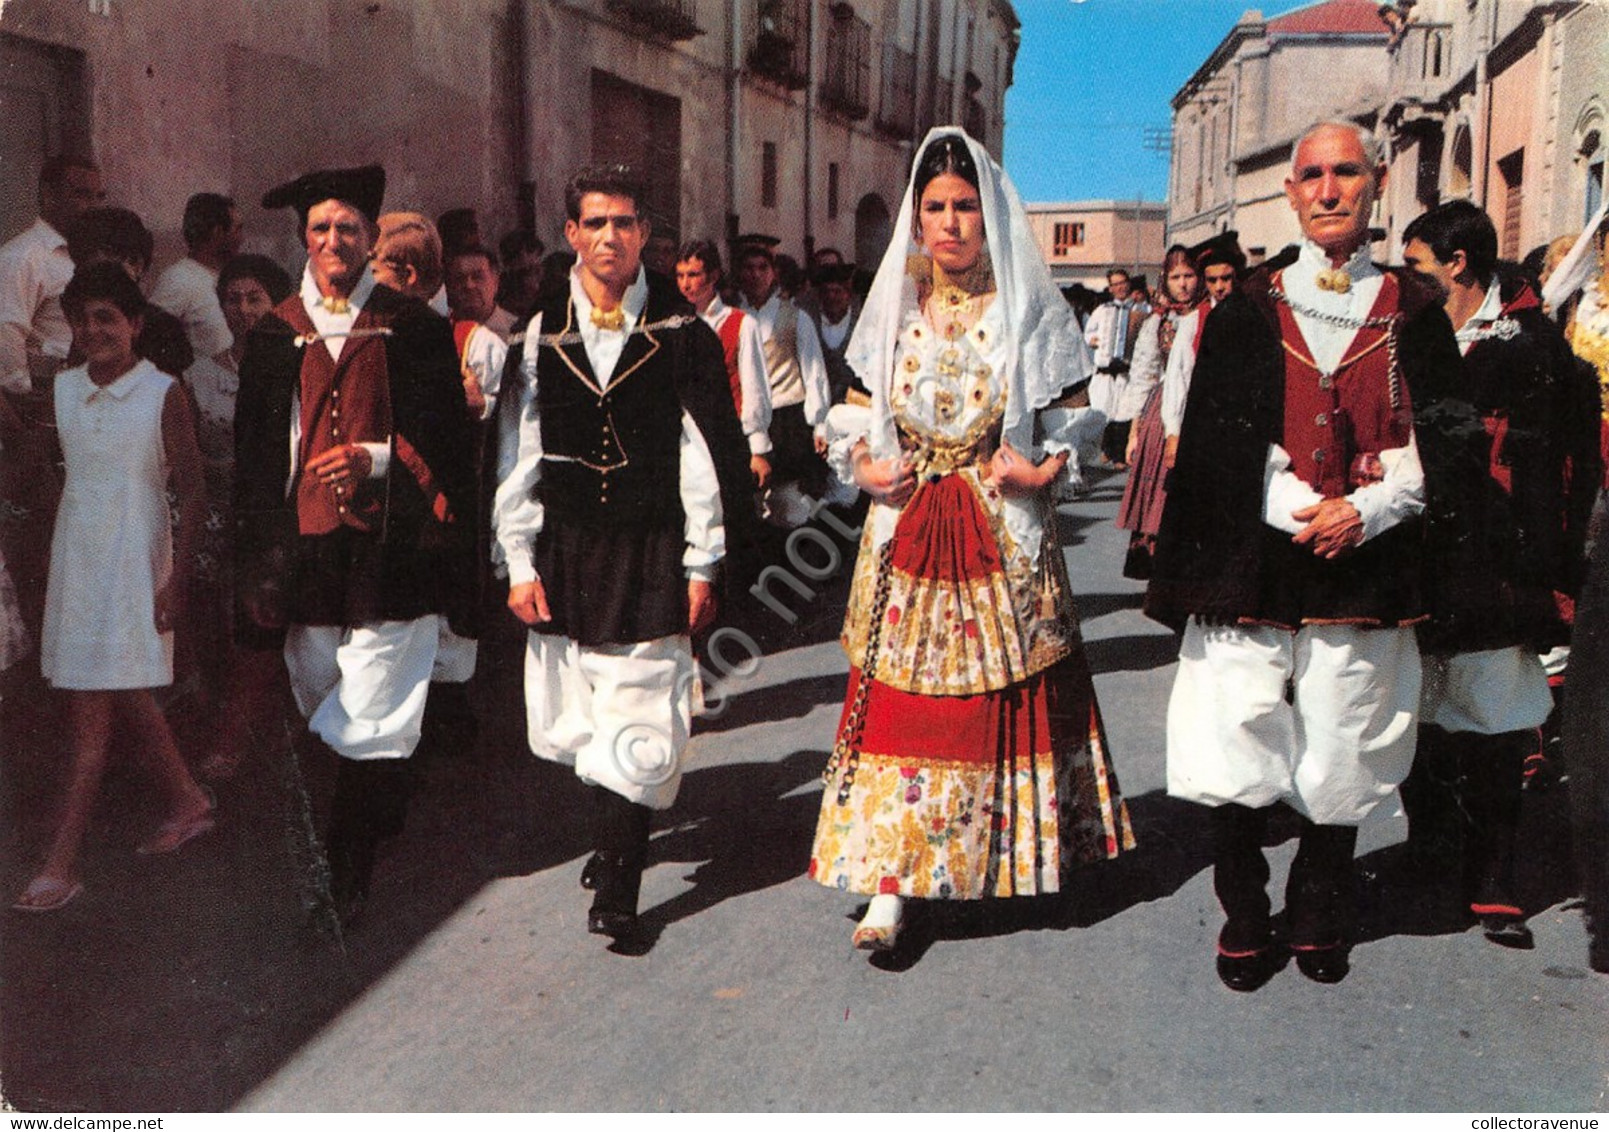 Cartolina Sardegna Costumi Sardi Antico Sposalizio Selargius 1961 Segnata (Cagliari) - Cagliari